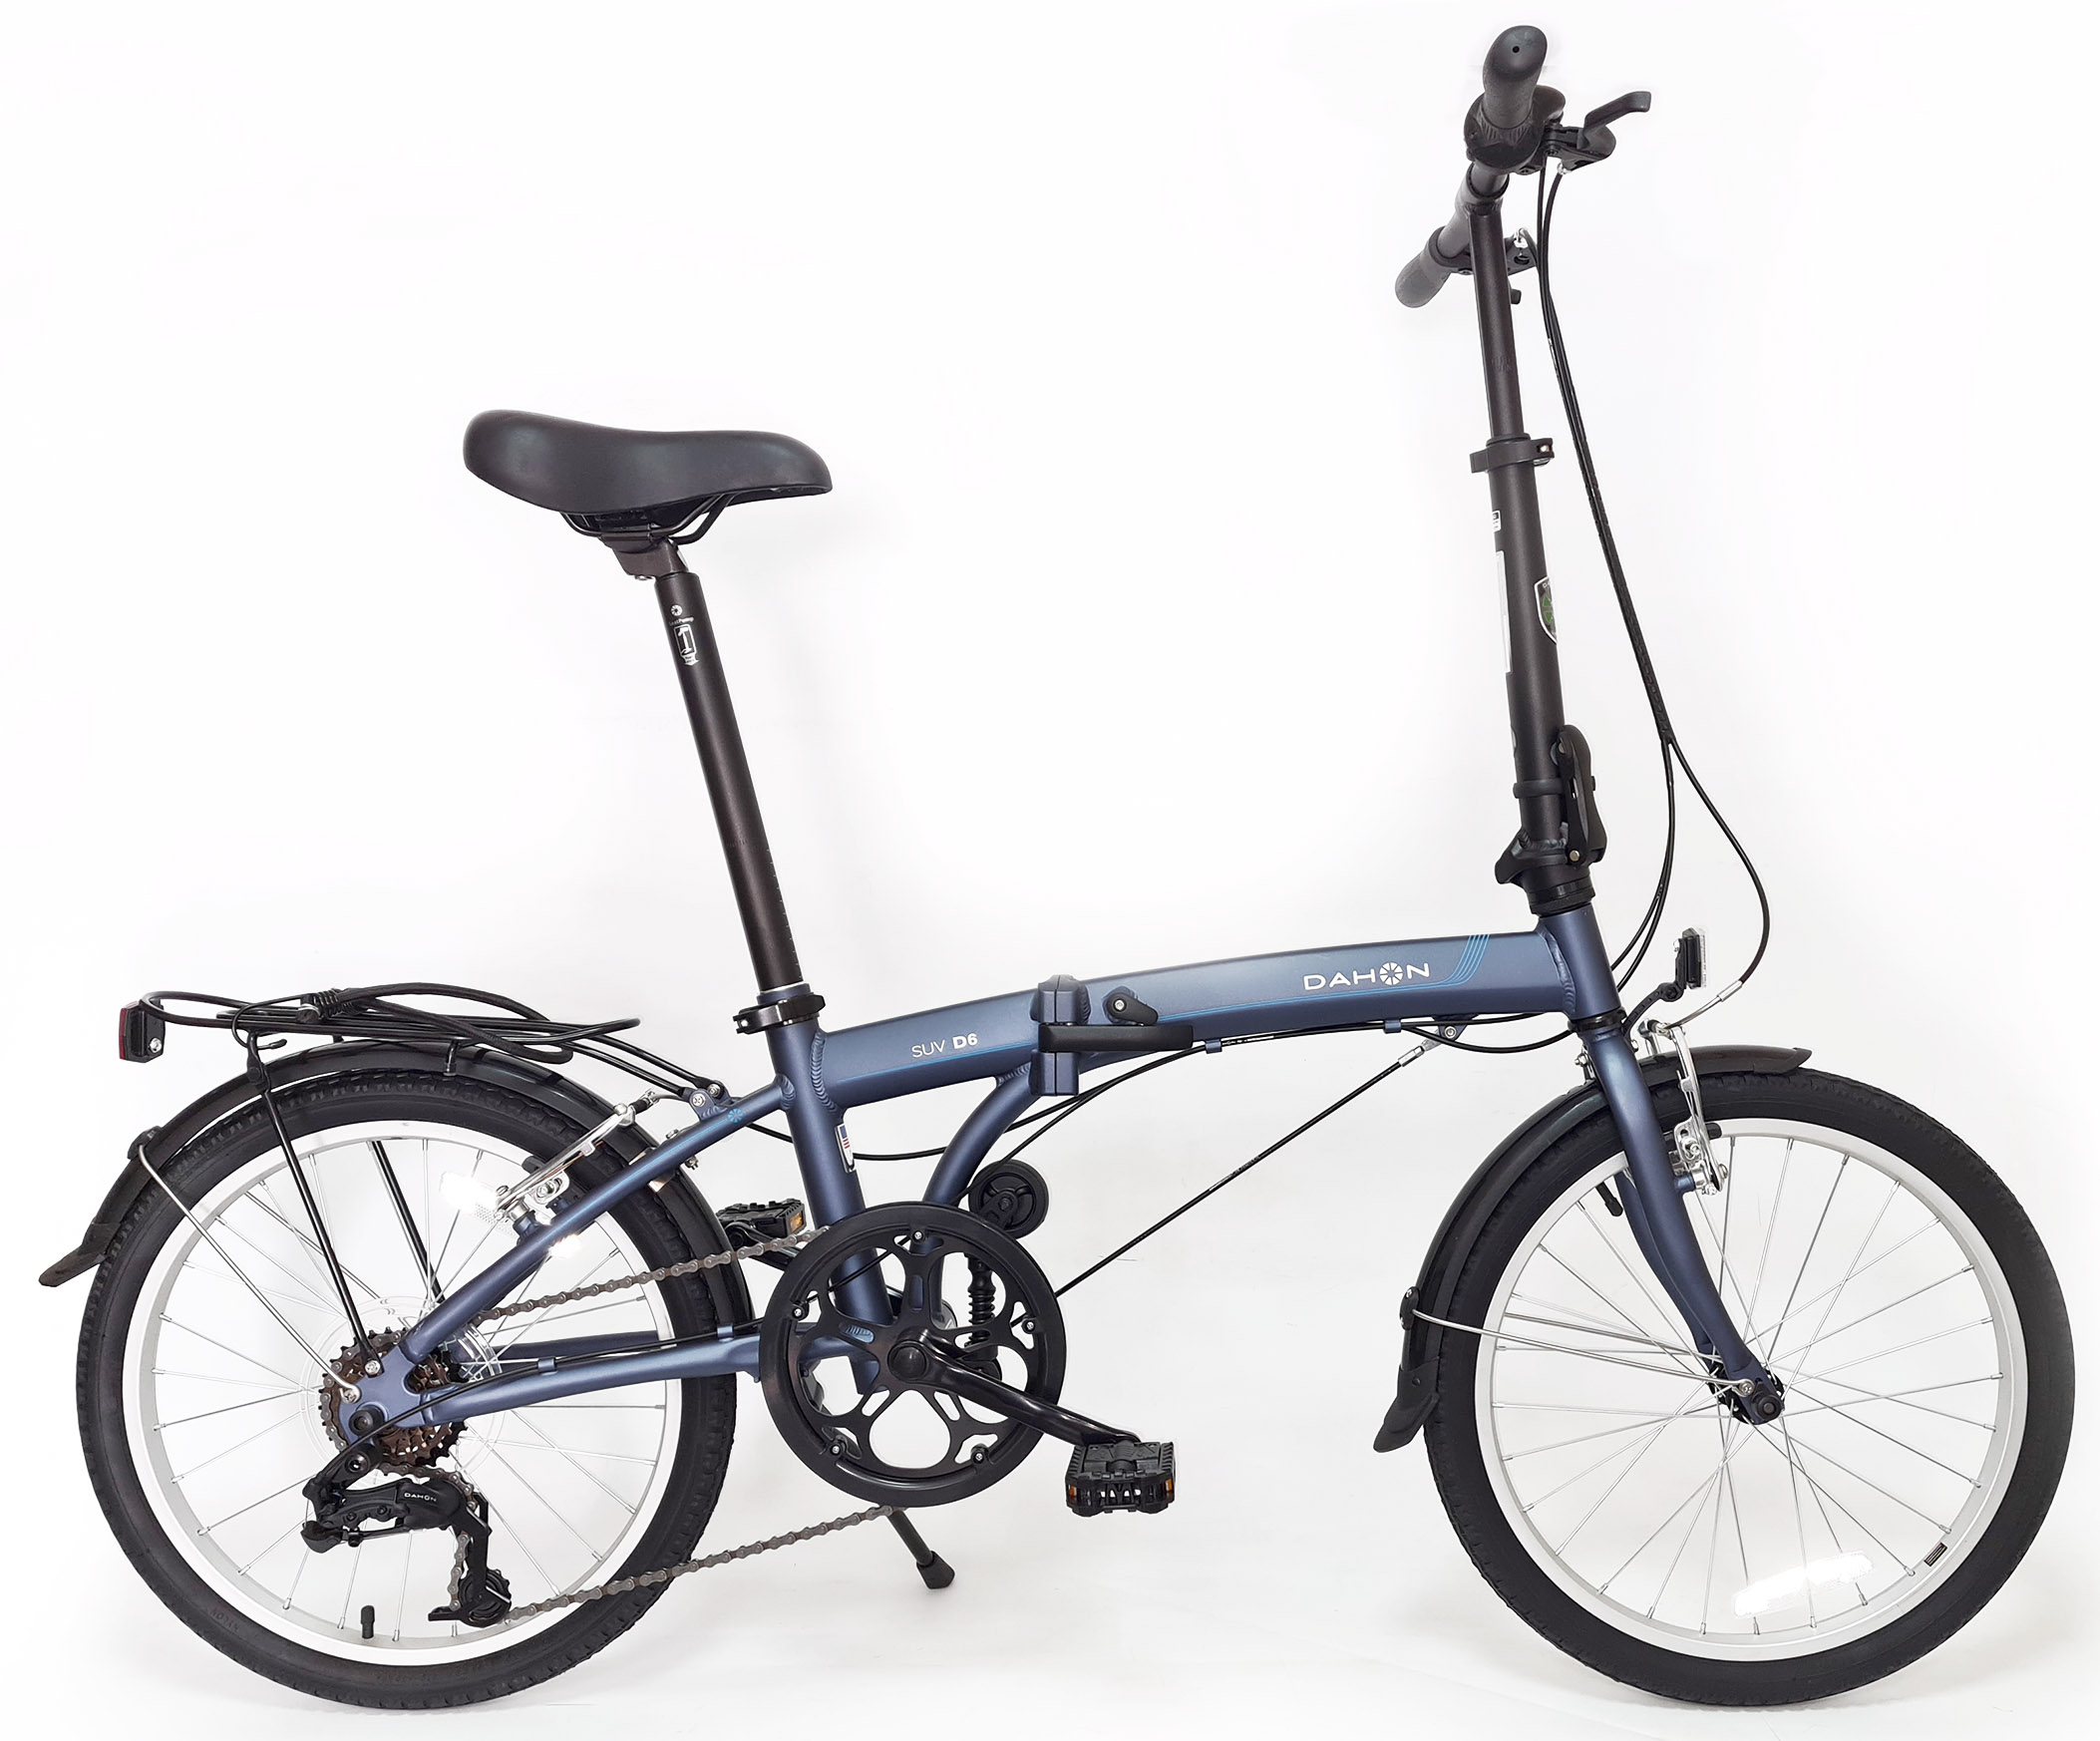  Отзывы о Складном велосипеде Dahon SUV D6 (2021) 2021